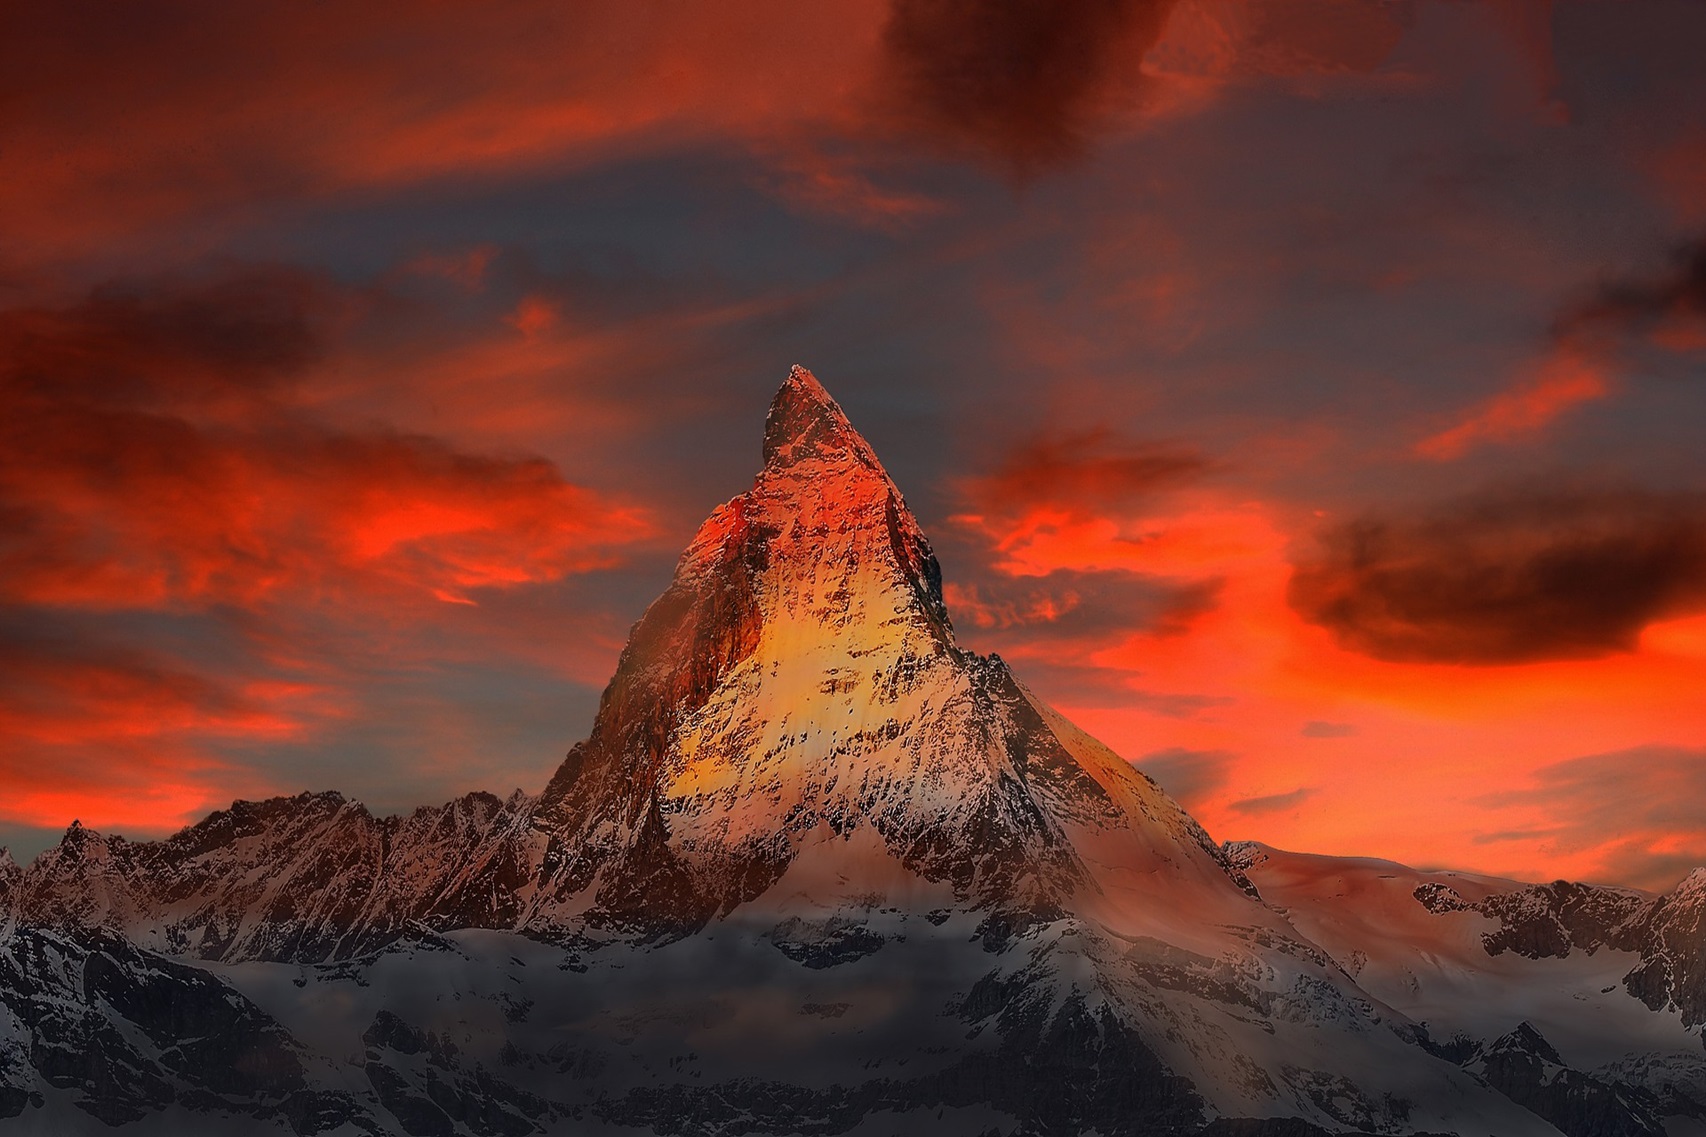 Bitcoin climbs a mountain